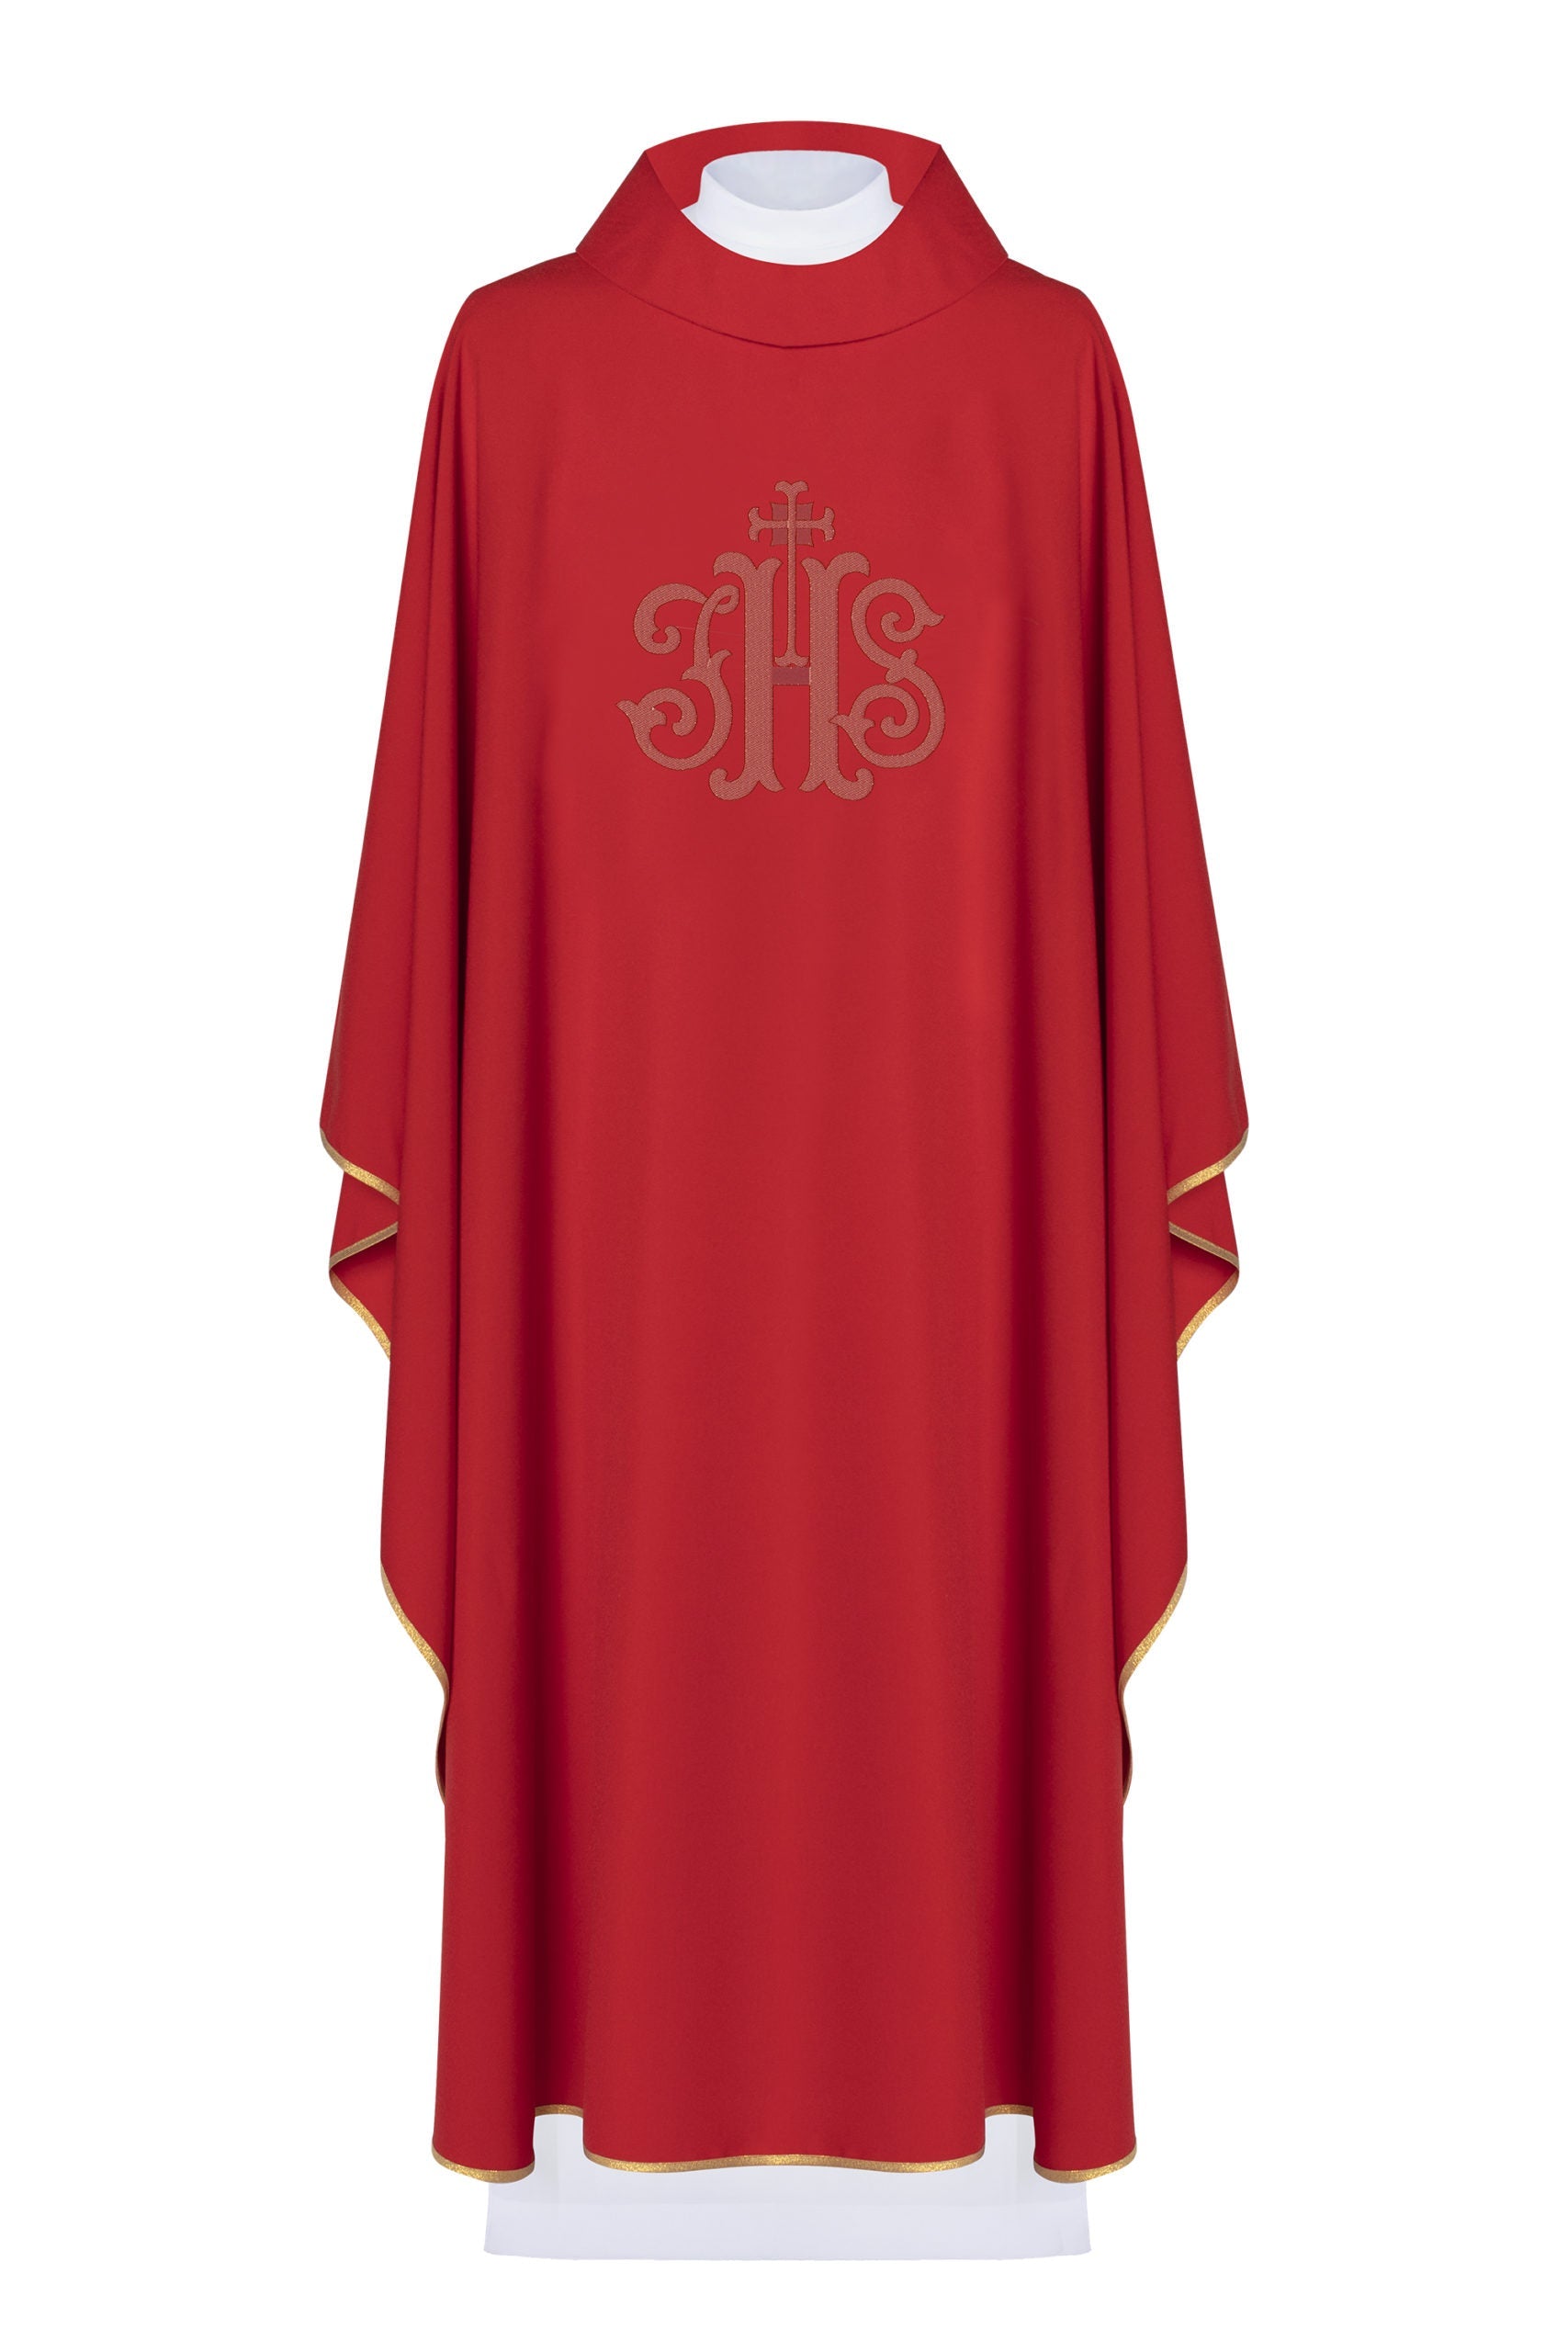 Czerwony ornat liturgiczny haftowany IHS